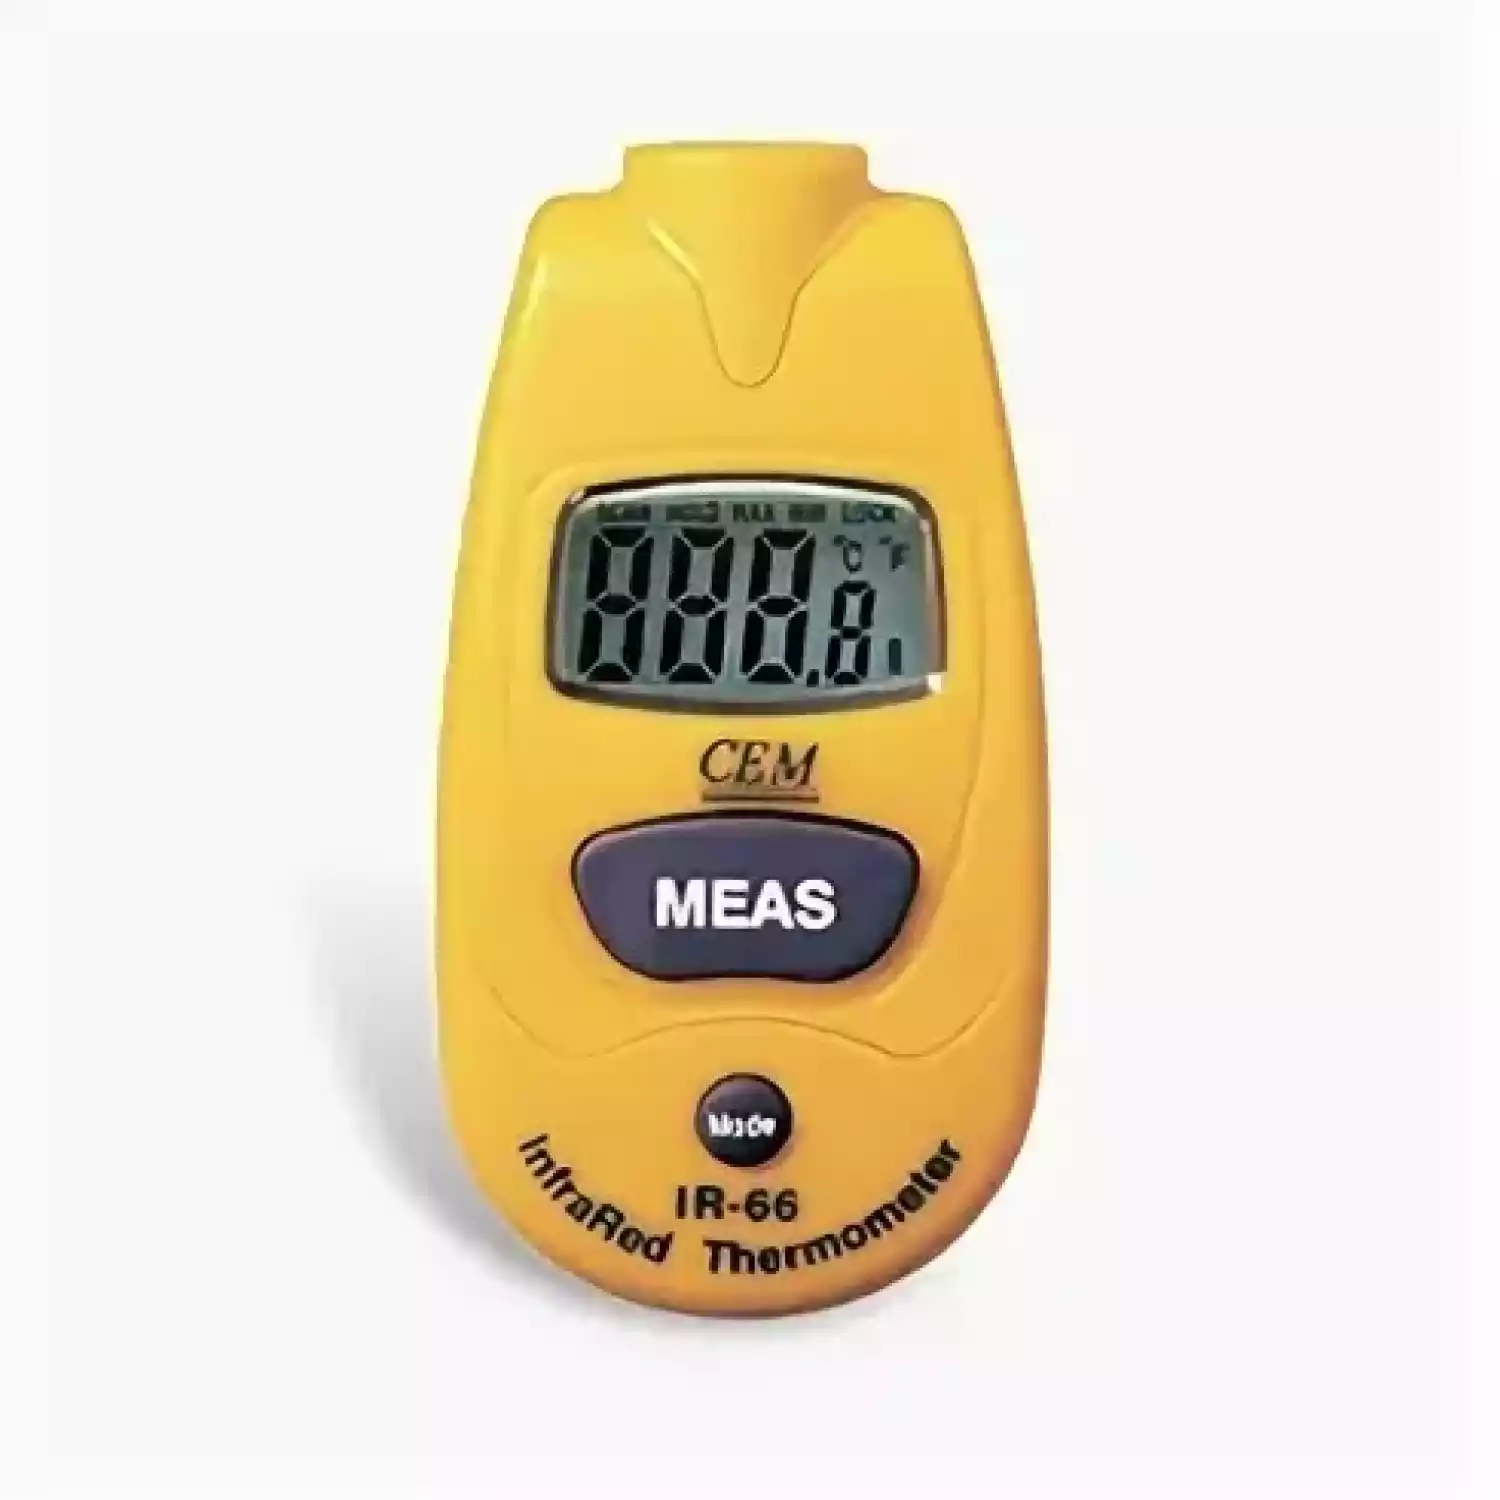 Дистанционный измеритель температуры (пирометр) CEM IR-66 - 2